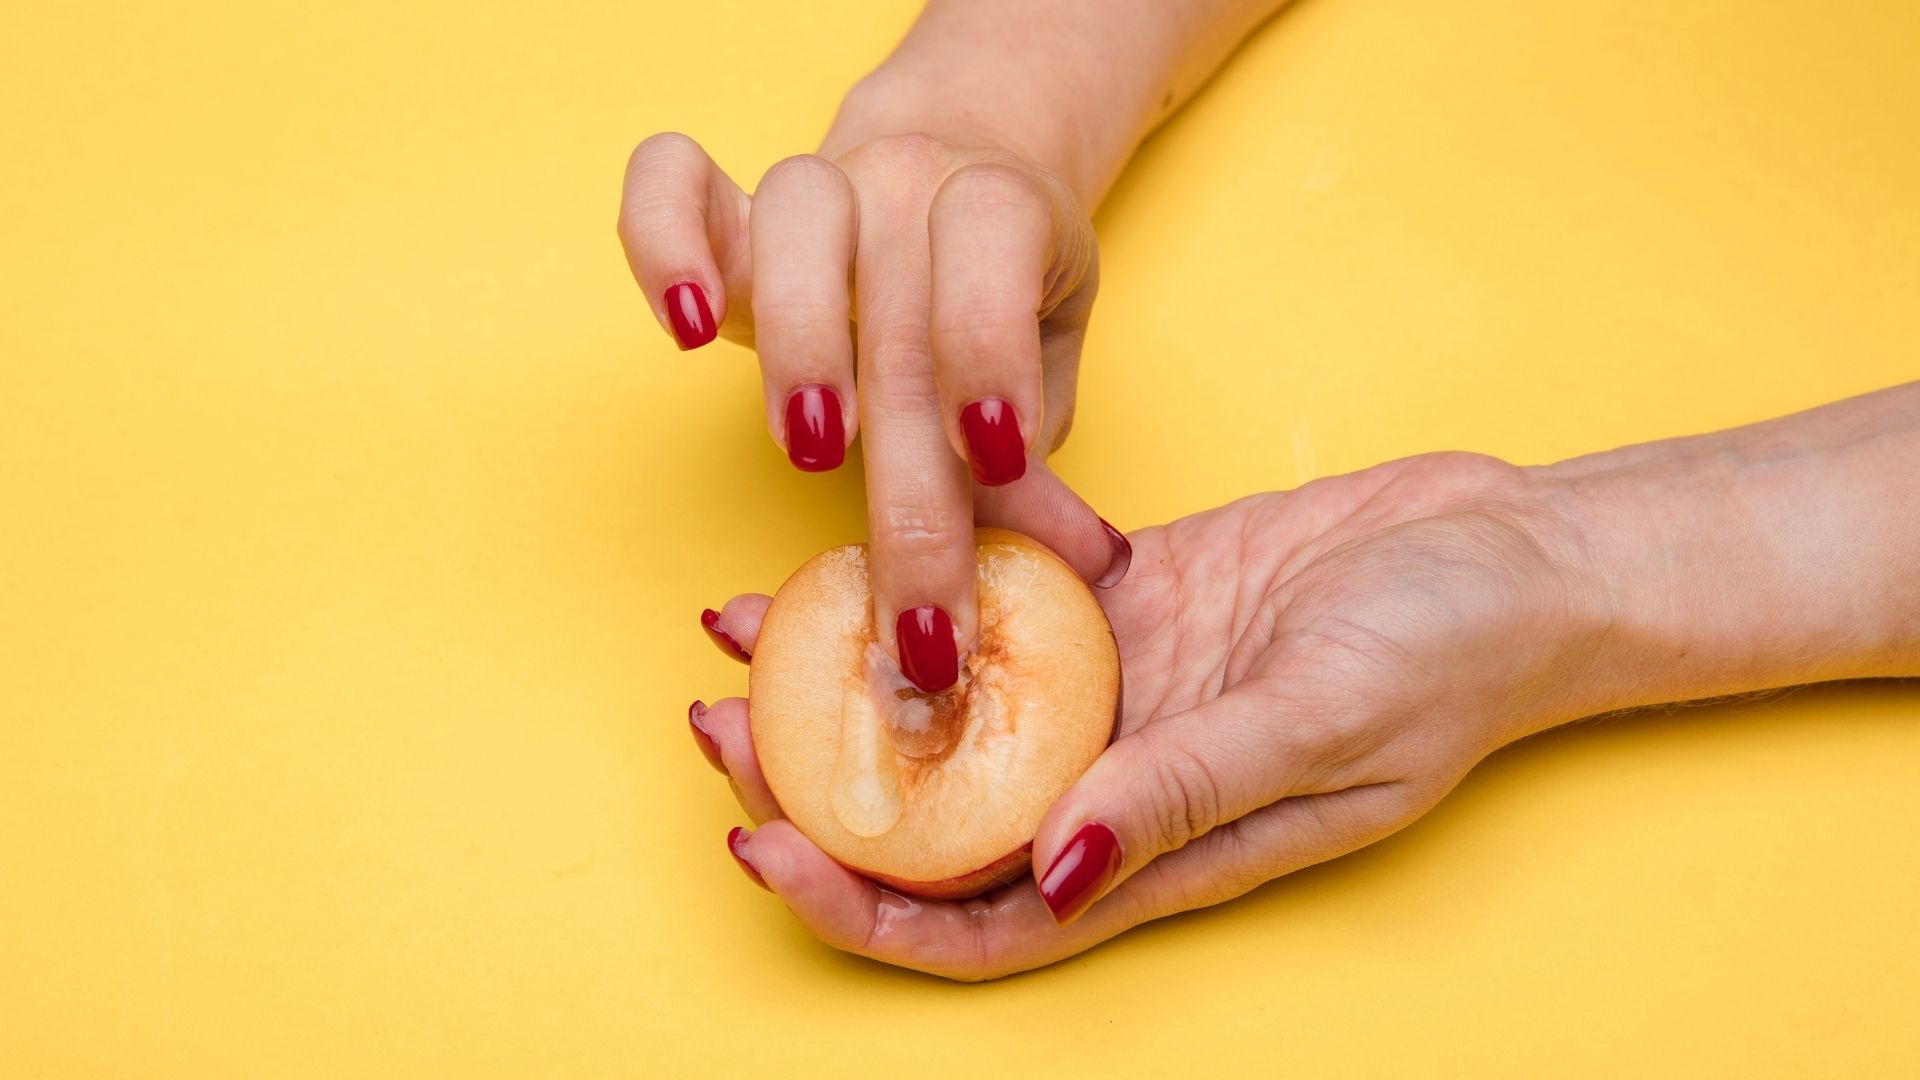 Femme mimant la masturbation sur un fruit